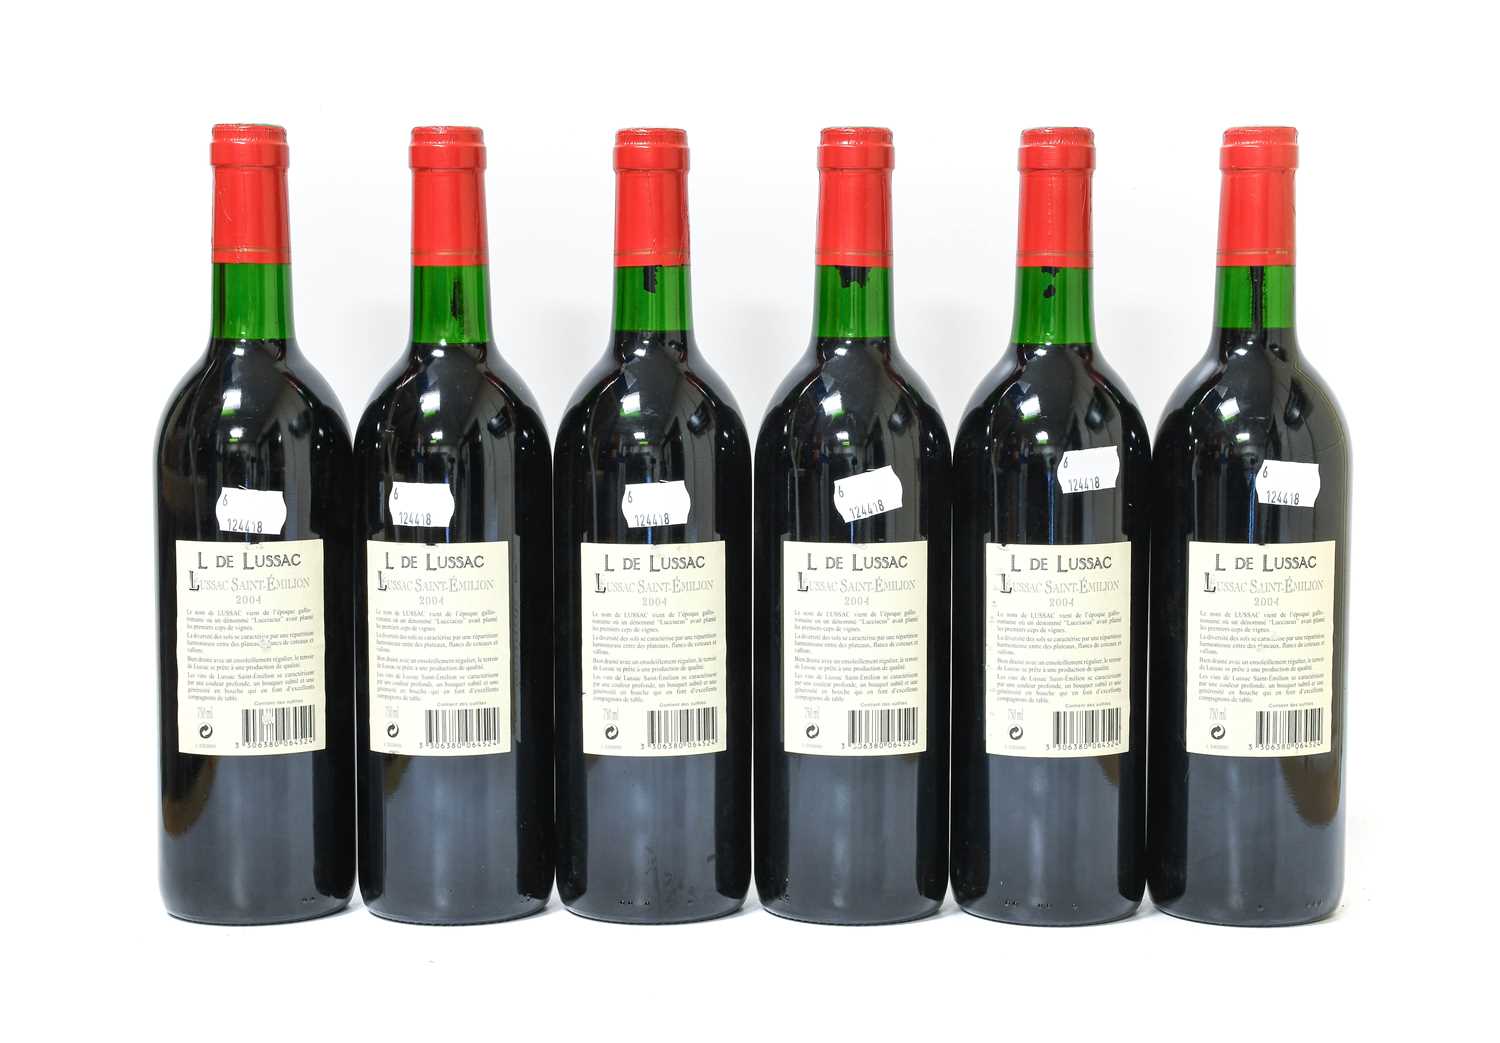 L de Lussac 2004 Saint-Émilion (six bottles) - Image 2 of 2